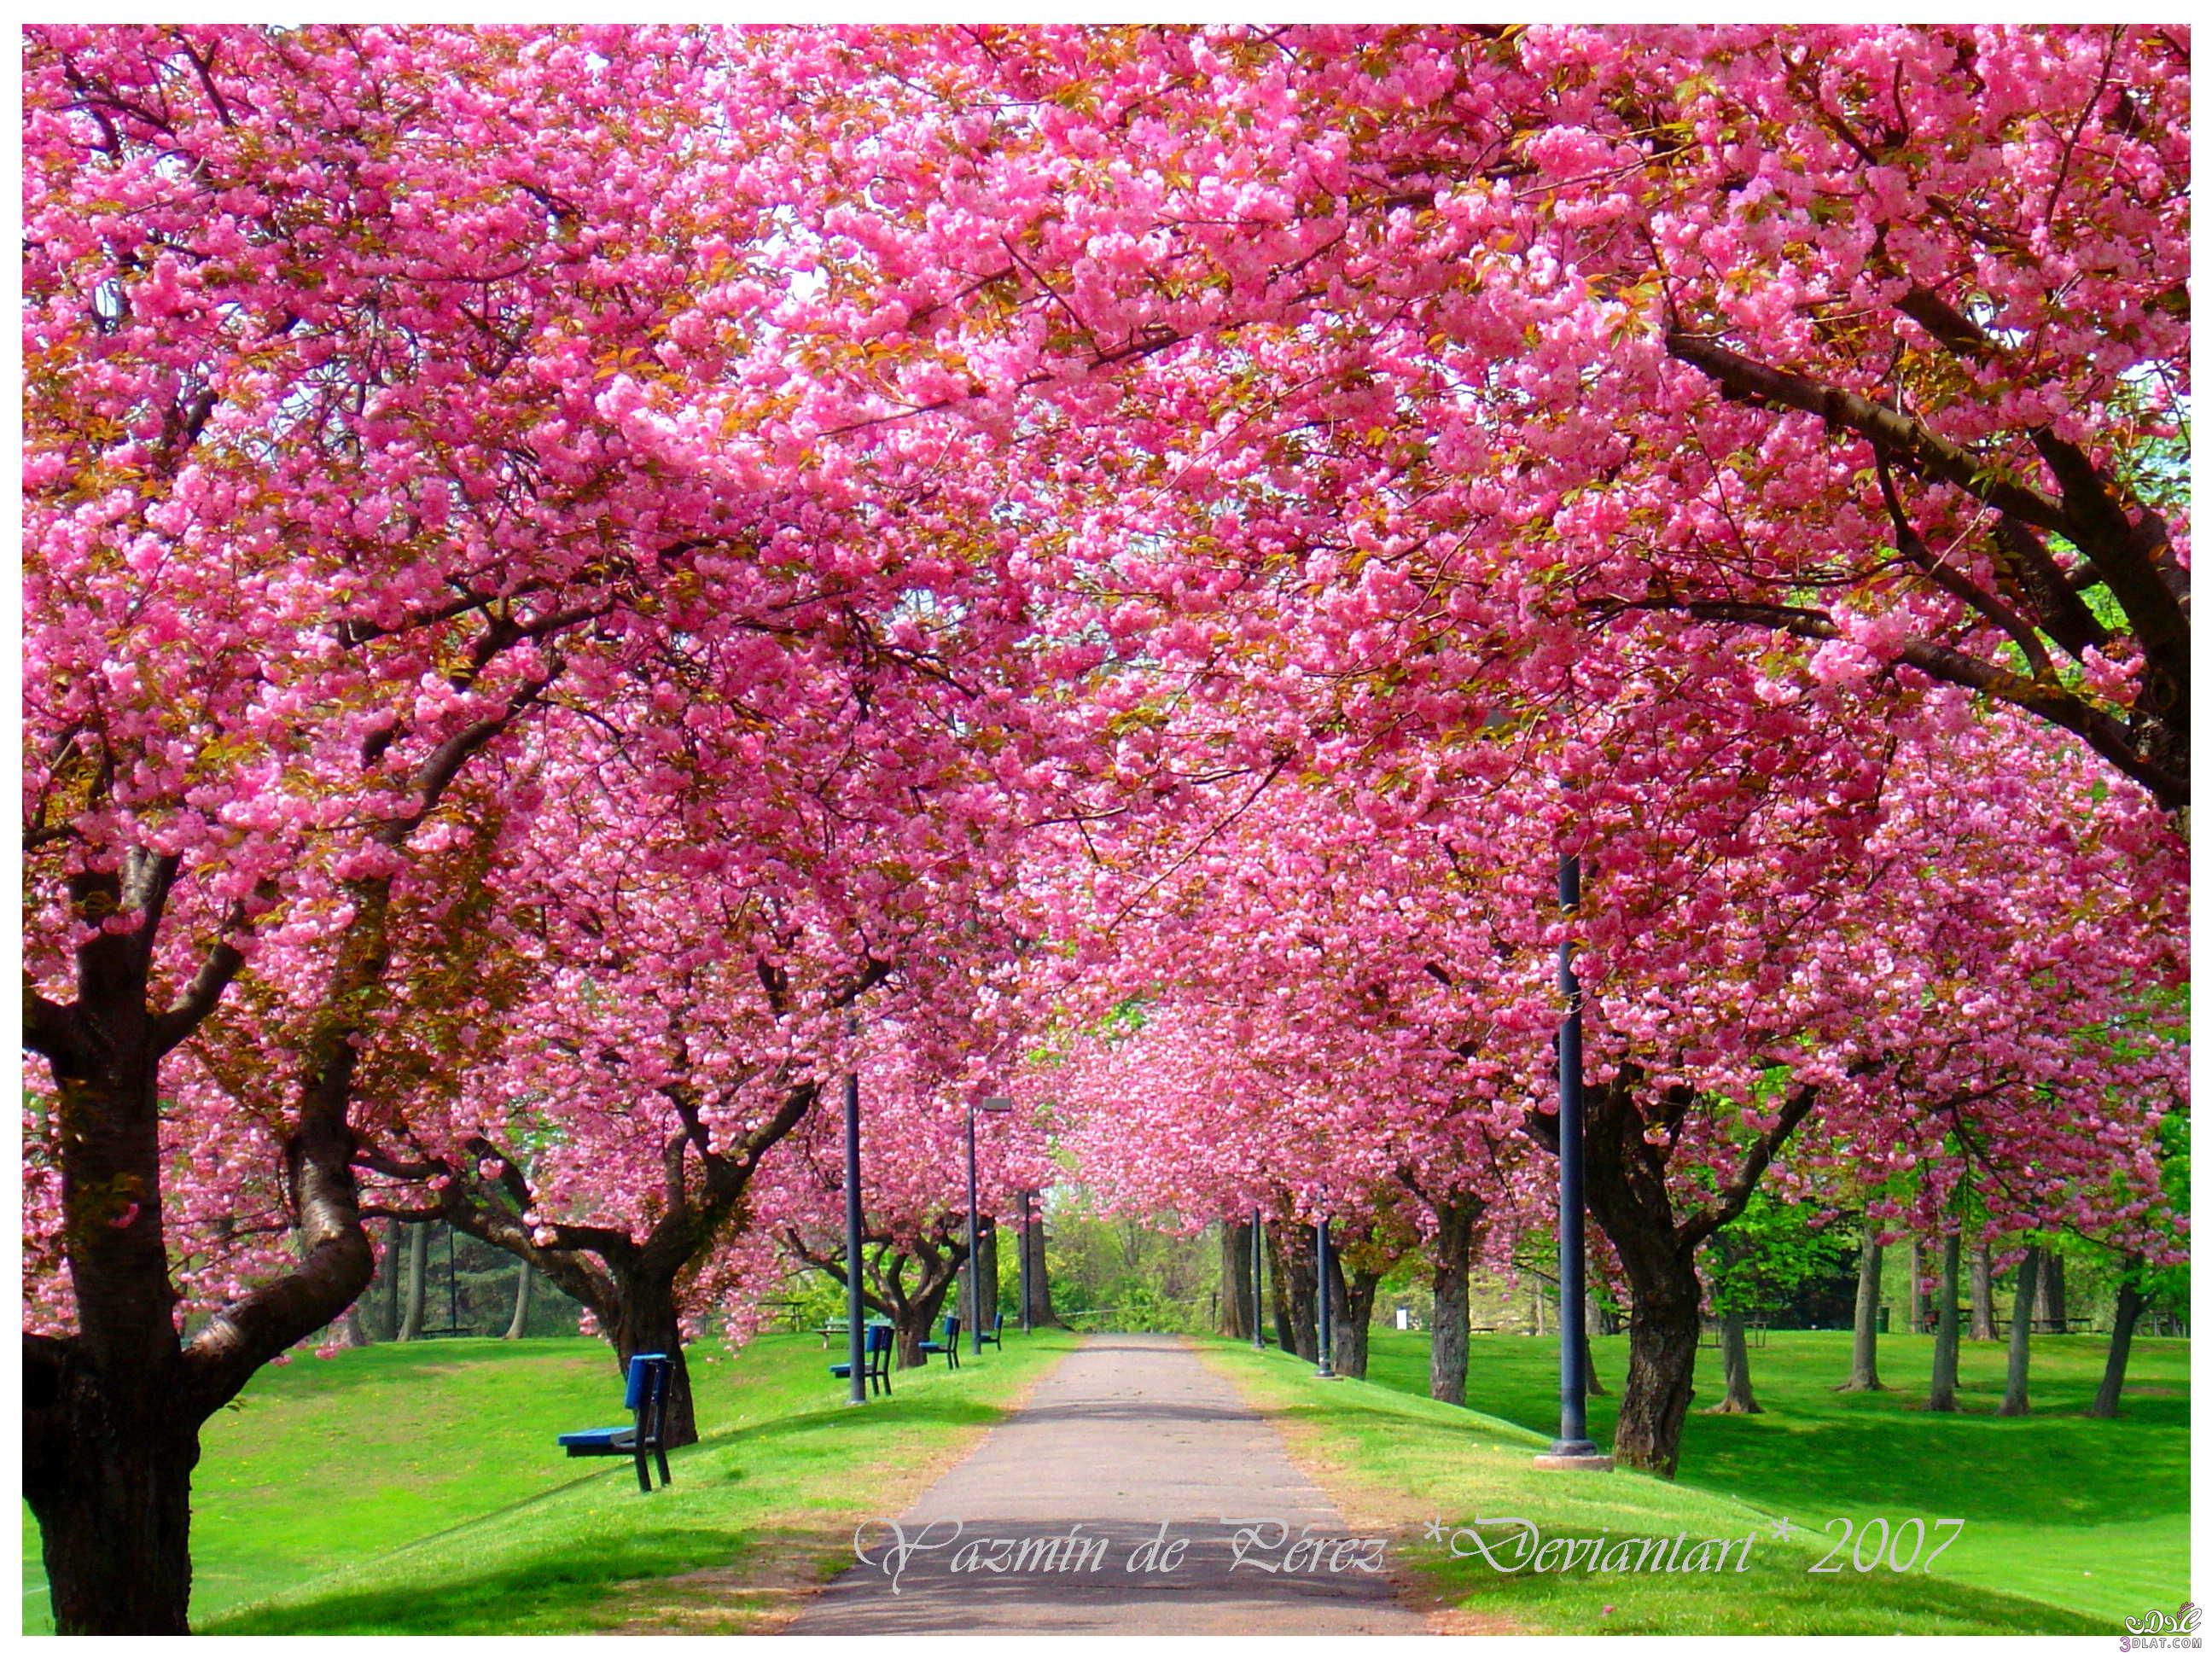 صور ربيع للتصميم اجمل صور الربيع للتصميم جمال وروعة الربيع صور للتصميمات